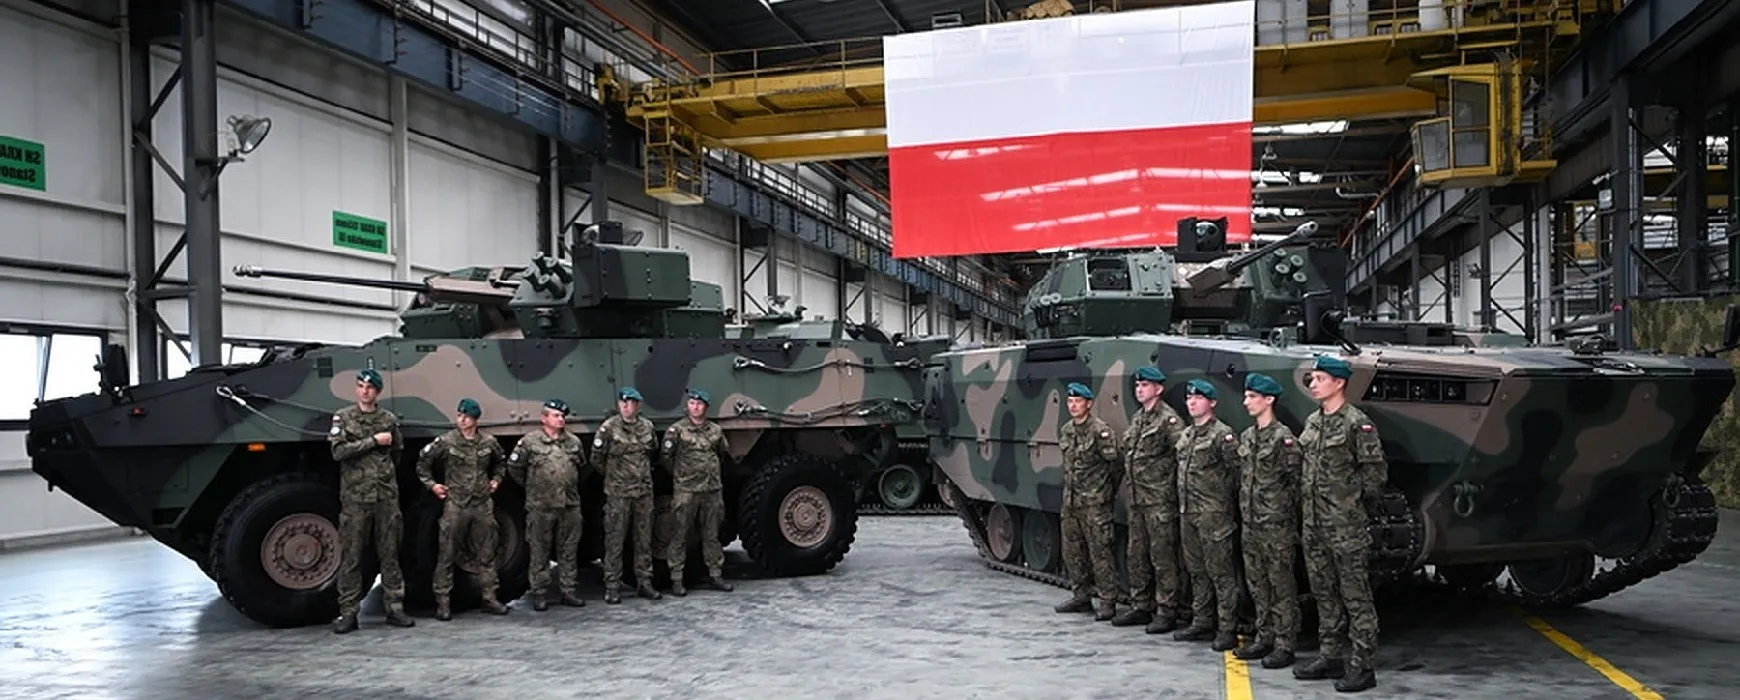 Η Πολωνία θέλει να αποκτήσει τον ισχυρότερο στρατό στην Ευρώπη